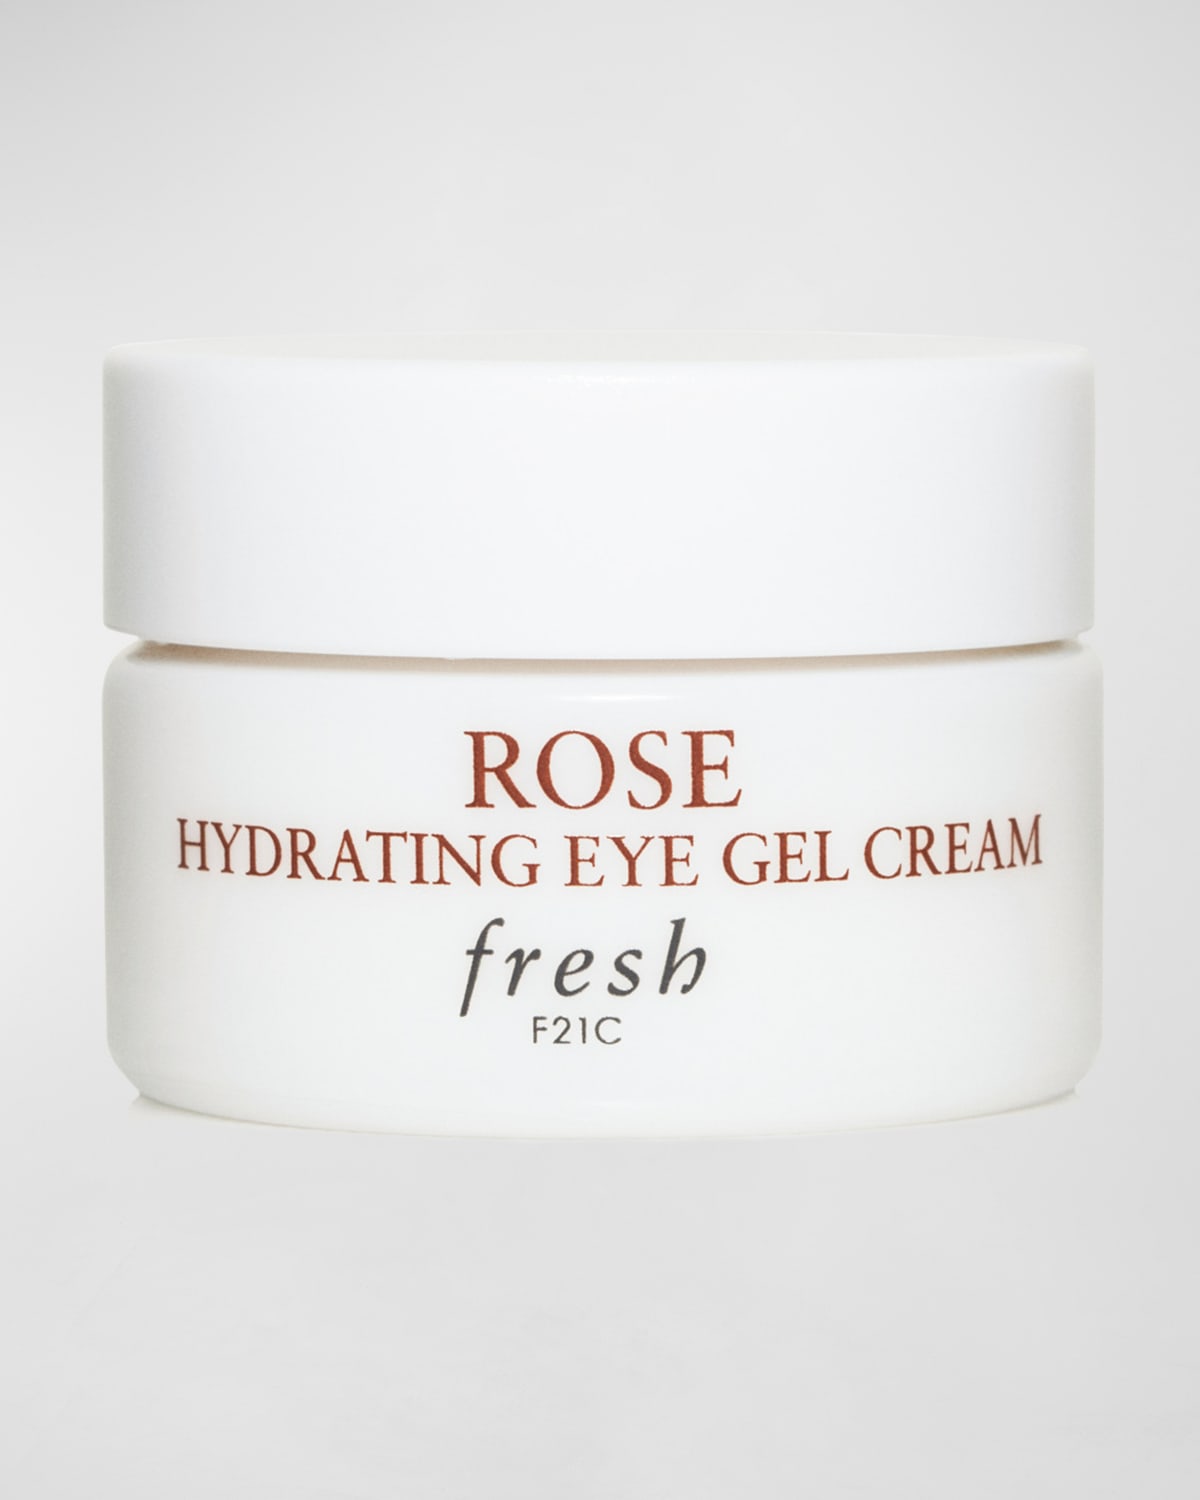 Rose Hydrating Eye Gel Cream, 0.5 oz.